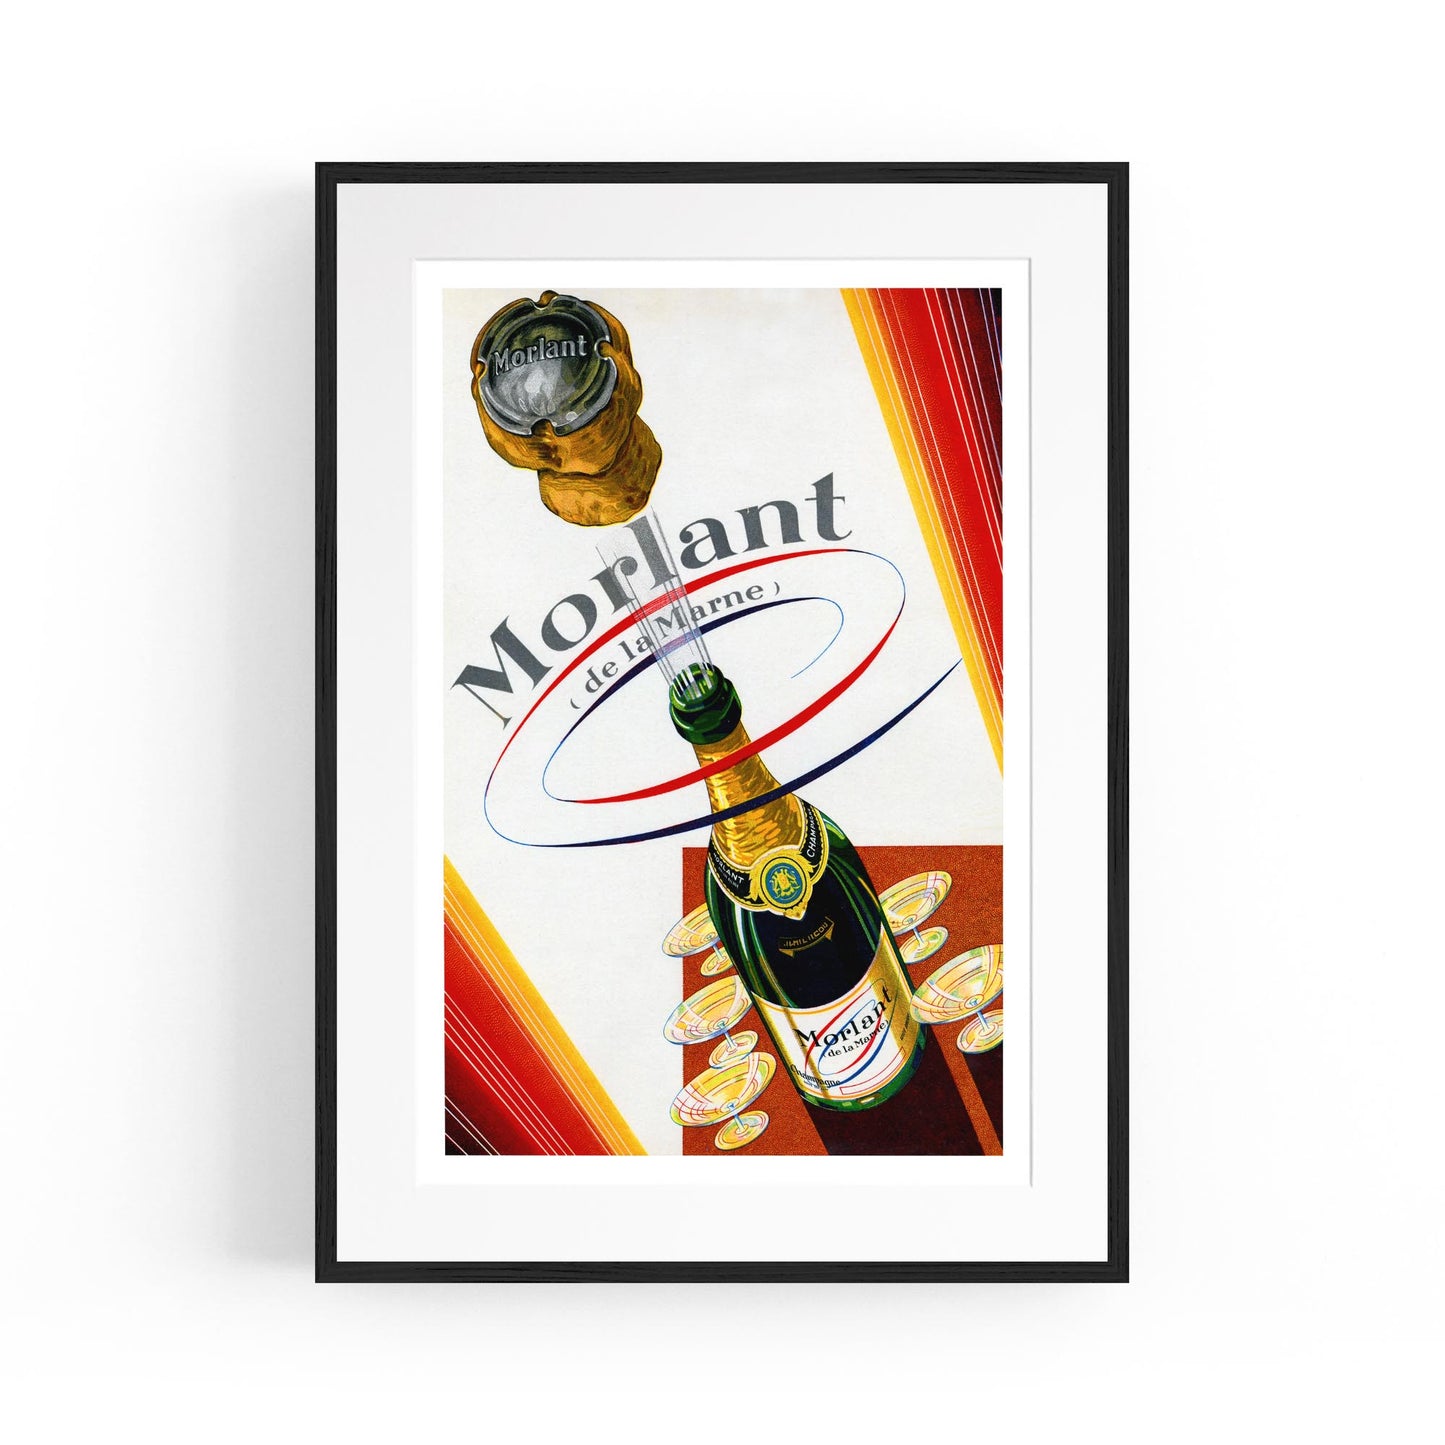 Morlant Champagne Wine | Framed Vintage Poster